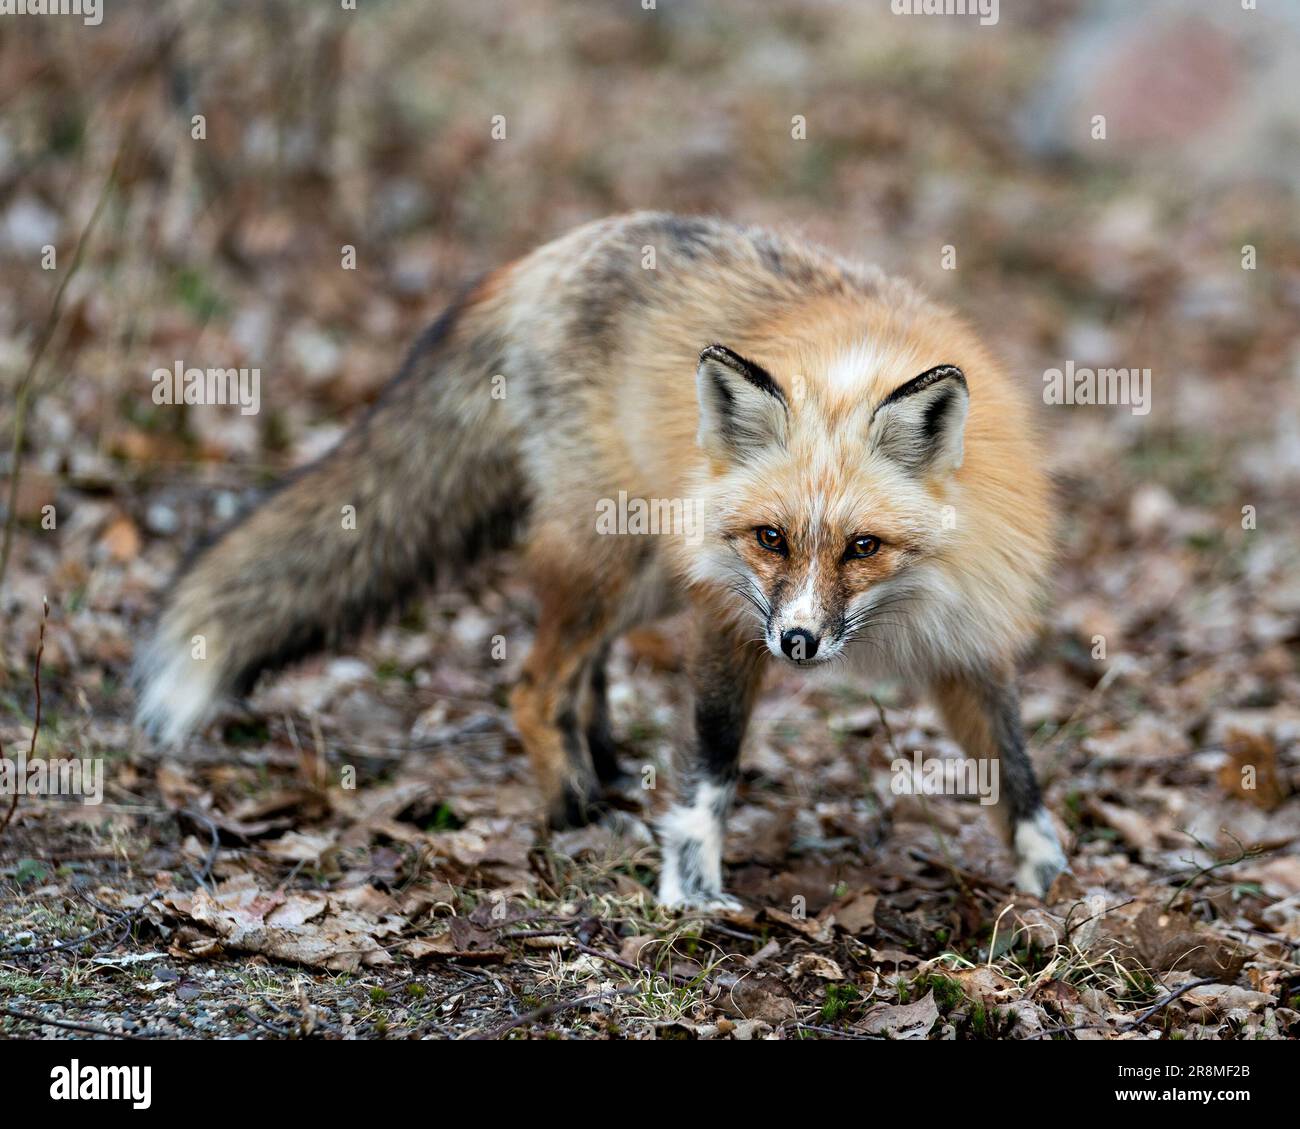 Profil de renard unique en rouge vue de face et regardant l'appareil photo au printemps dans son environnement et son habitat avec un arrière-plan flou d'affichage W Banque D'Images